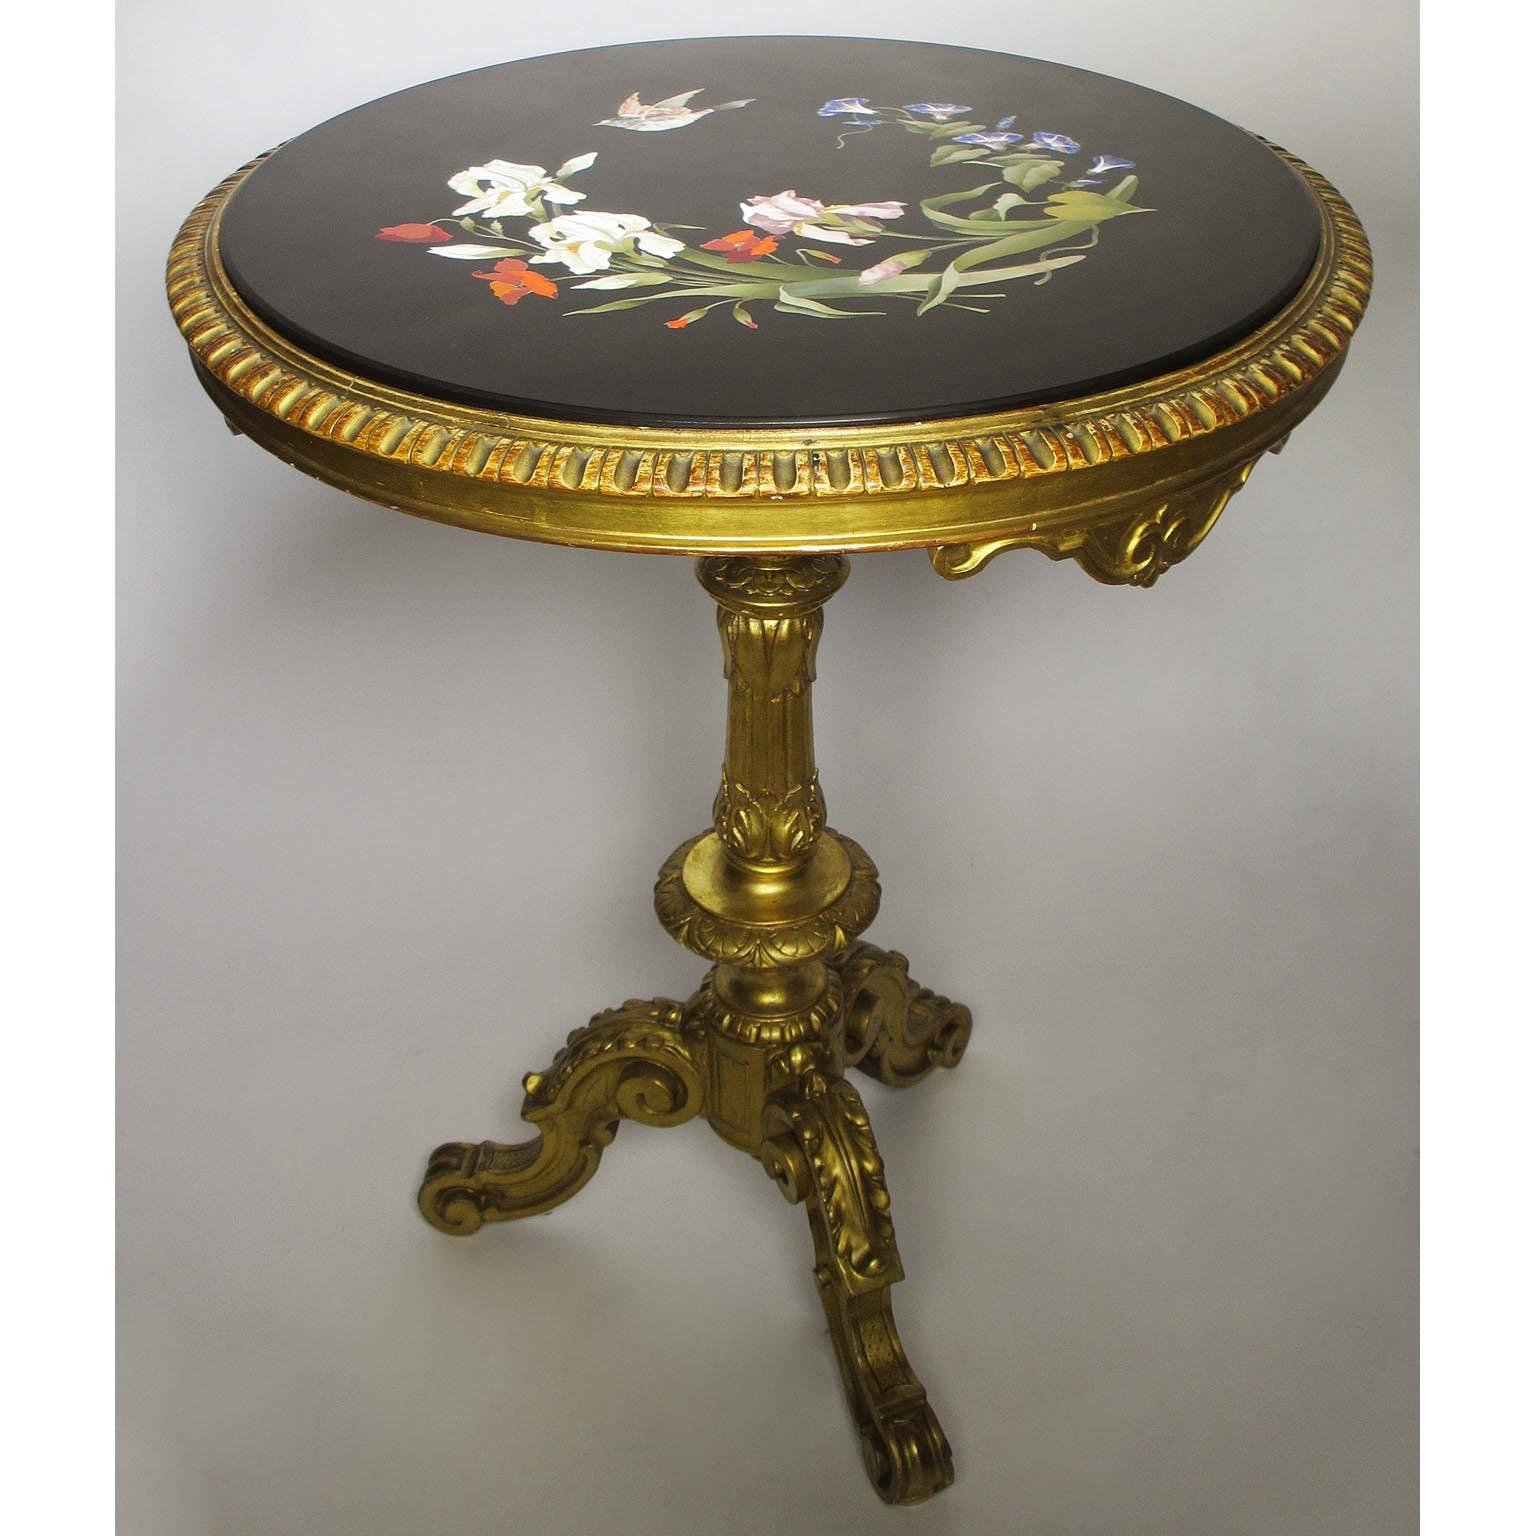 Ein sehr feiner italienischer Pietra-Dura-Tisch mit Intarsien aus dem 19. Jahrhundert, der auf einem geschnitzten Sockel aus vergoldetem Holz steht. Die kreisförmige Pietra-Dura-Intarsienplatte zeigt einen Blumenstrauß mit Lilien, Paradiesvögeln,